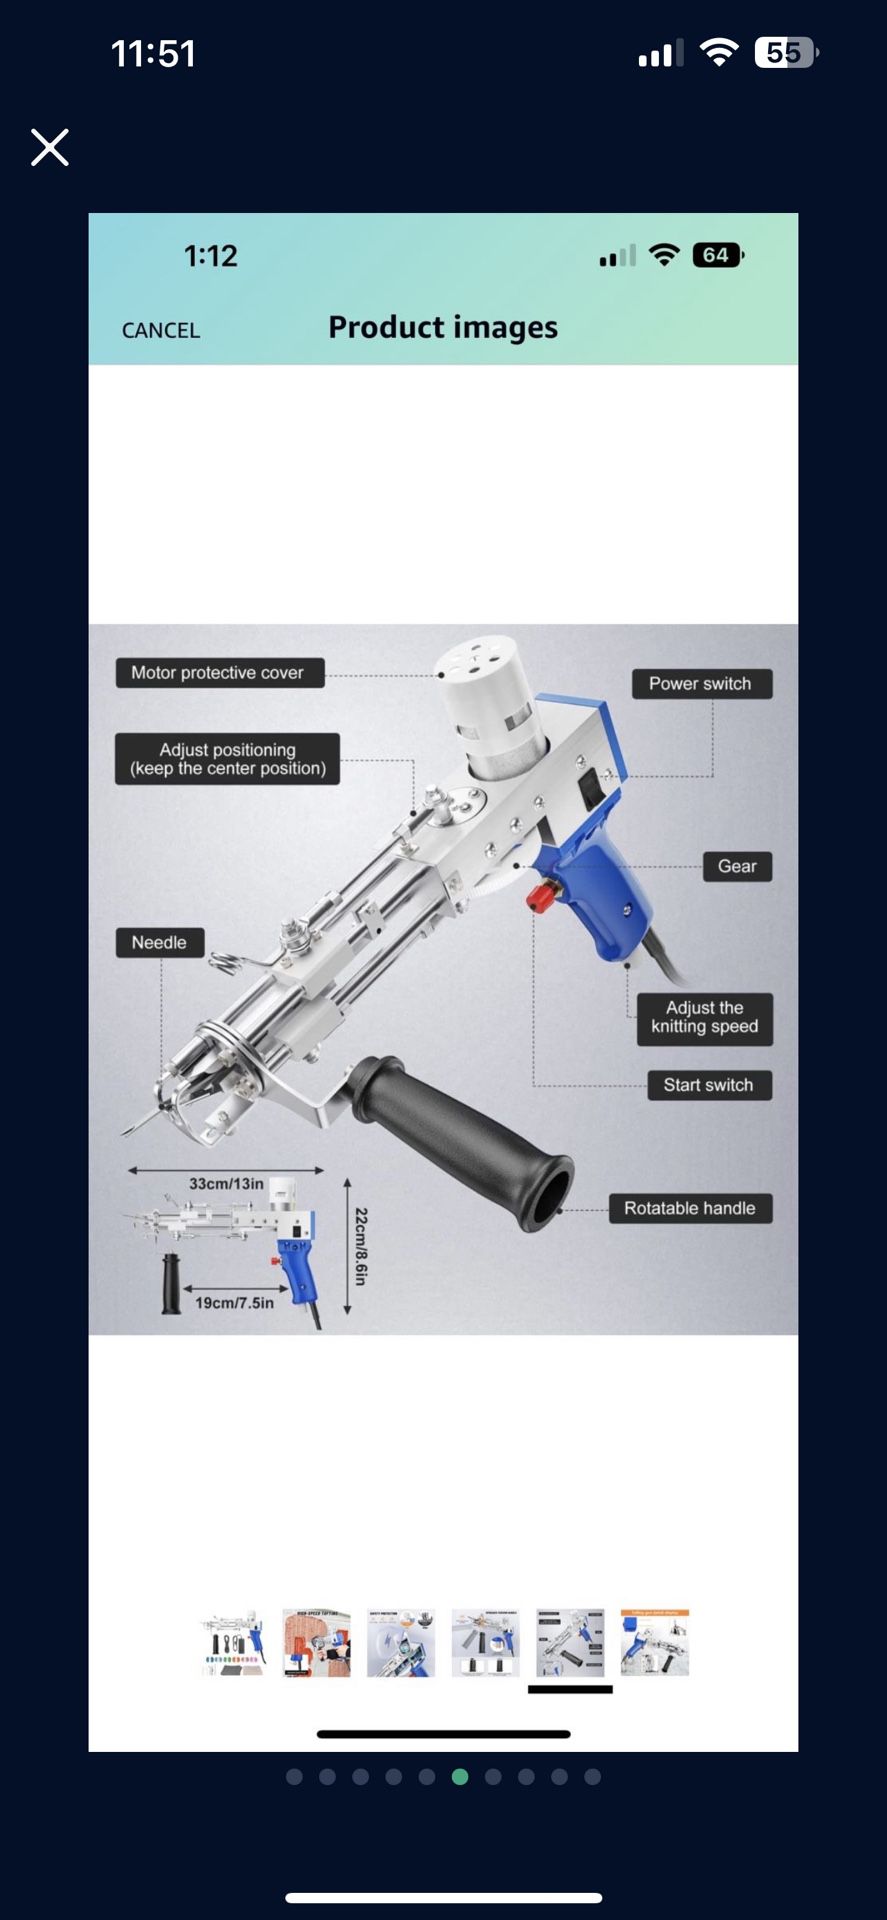 FancyBant Tufting Gun Rug Gun Starter Kit Cut Pile Tufting Gun Rug